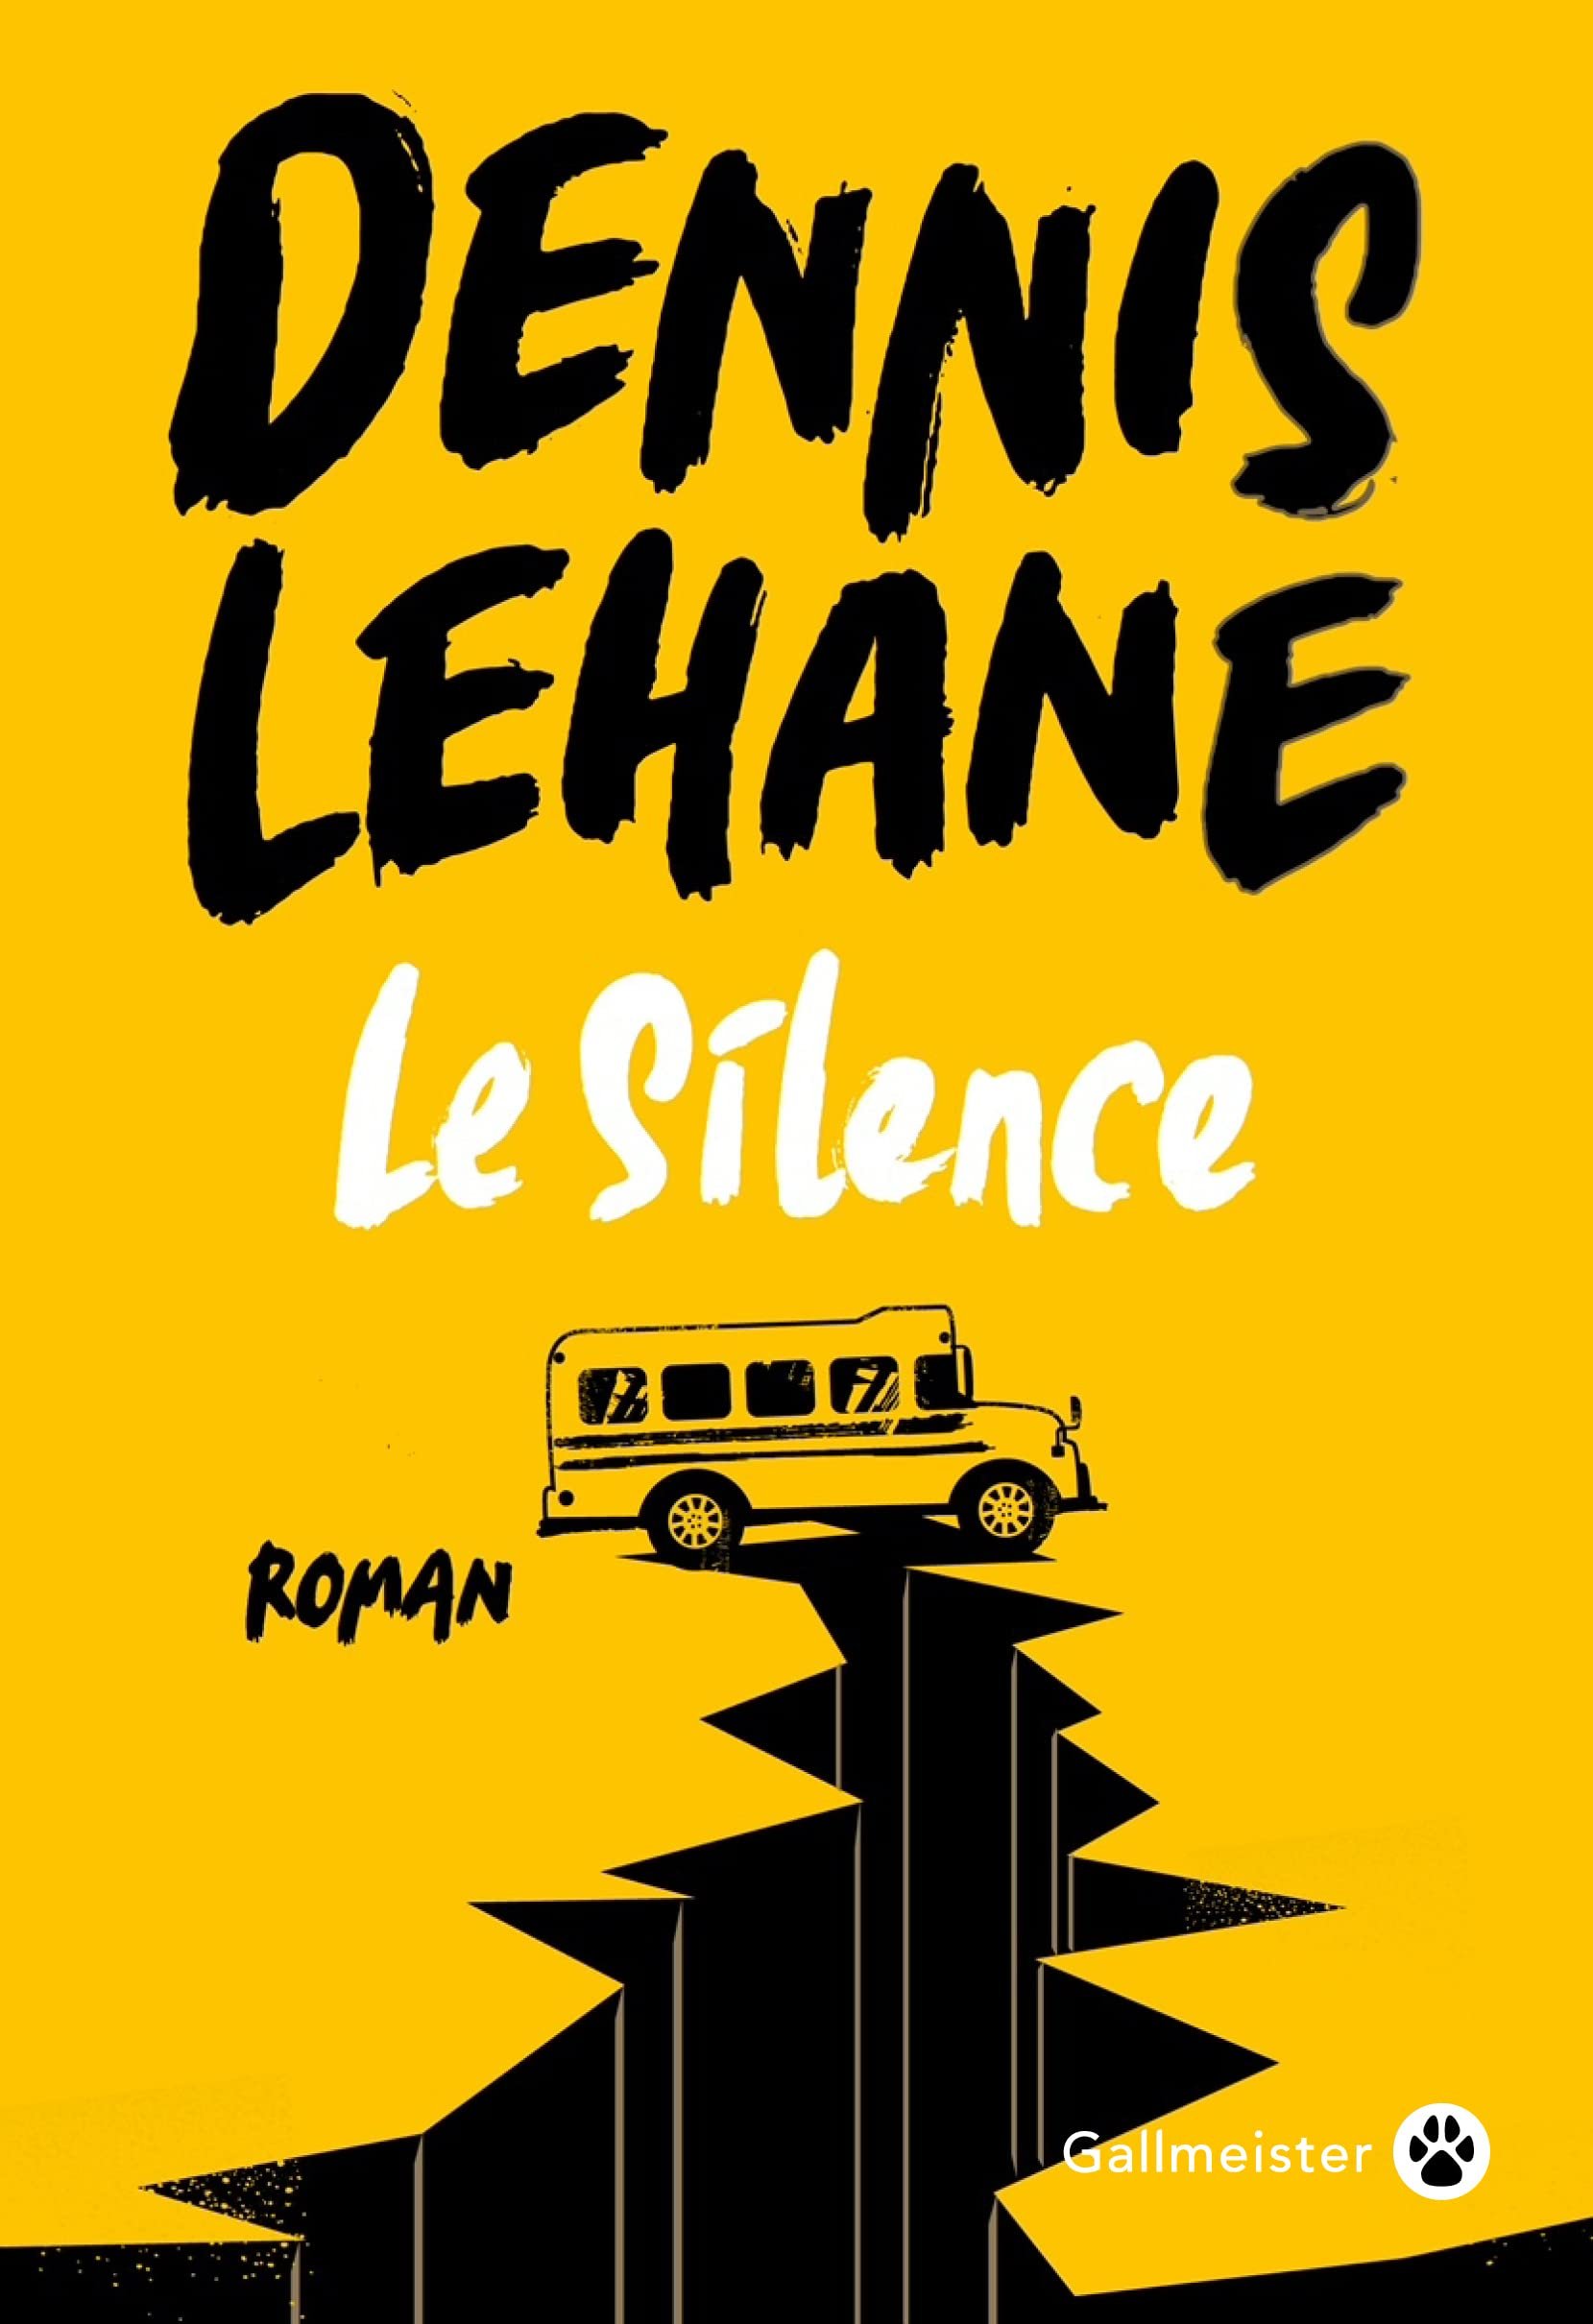 Dennis Lehane – Le Silence